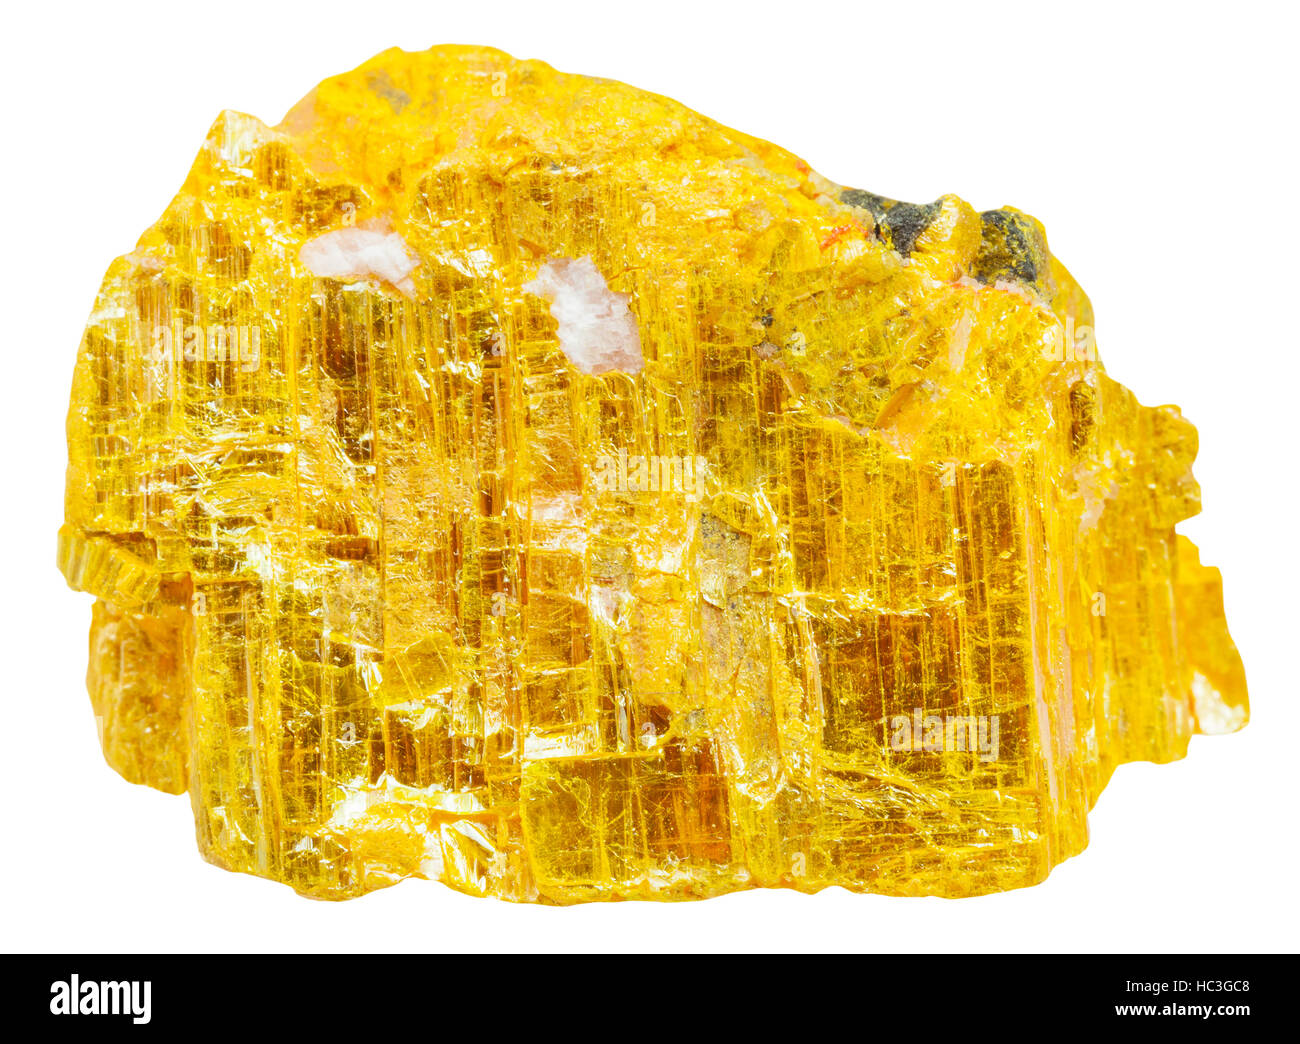 Makro-Aufnahmen der Probe der natürlichen Mineral - gelbe Rhusma (Ratebane, gelbe Arsen, gelbe Ratebane) Rock isoliert auf weißem Hintergrund Stockfoto